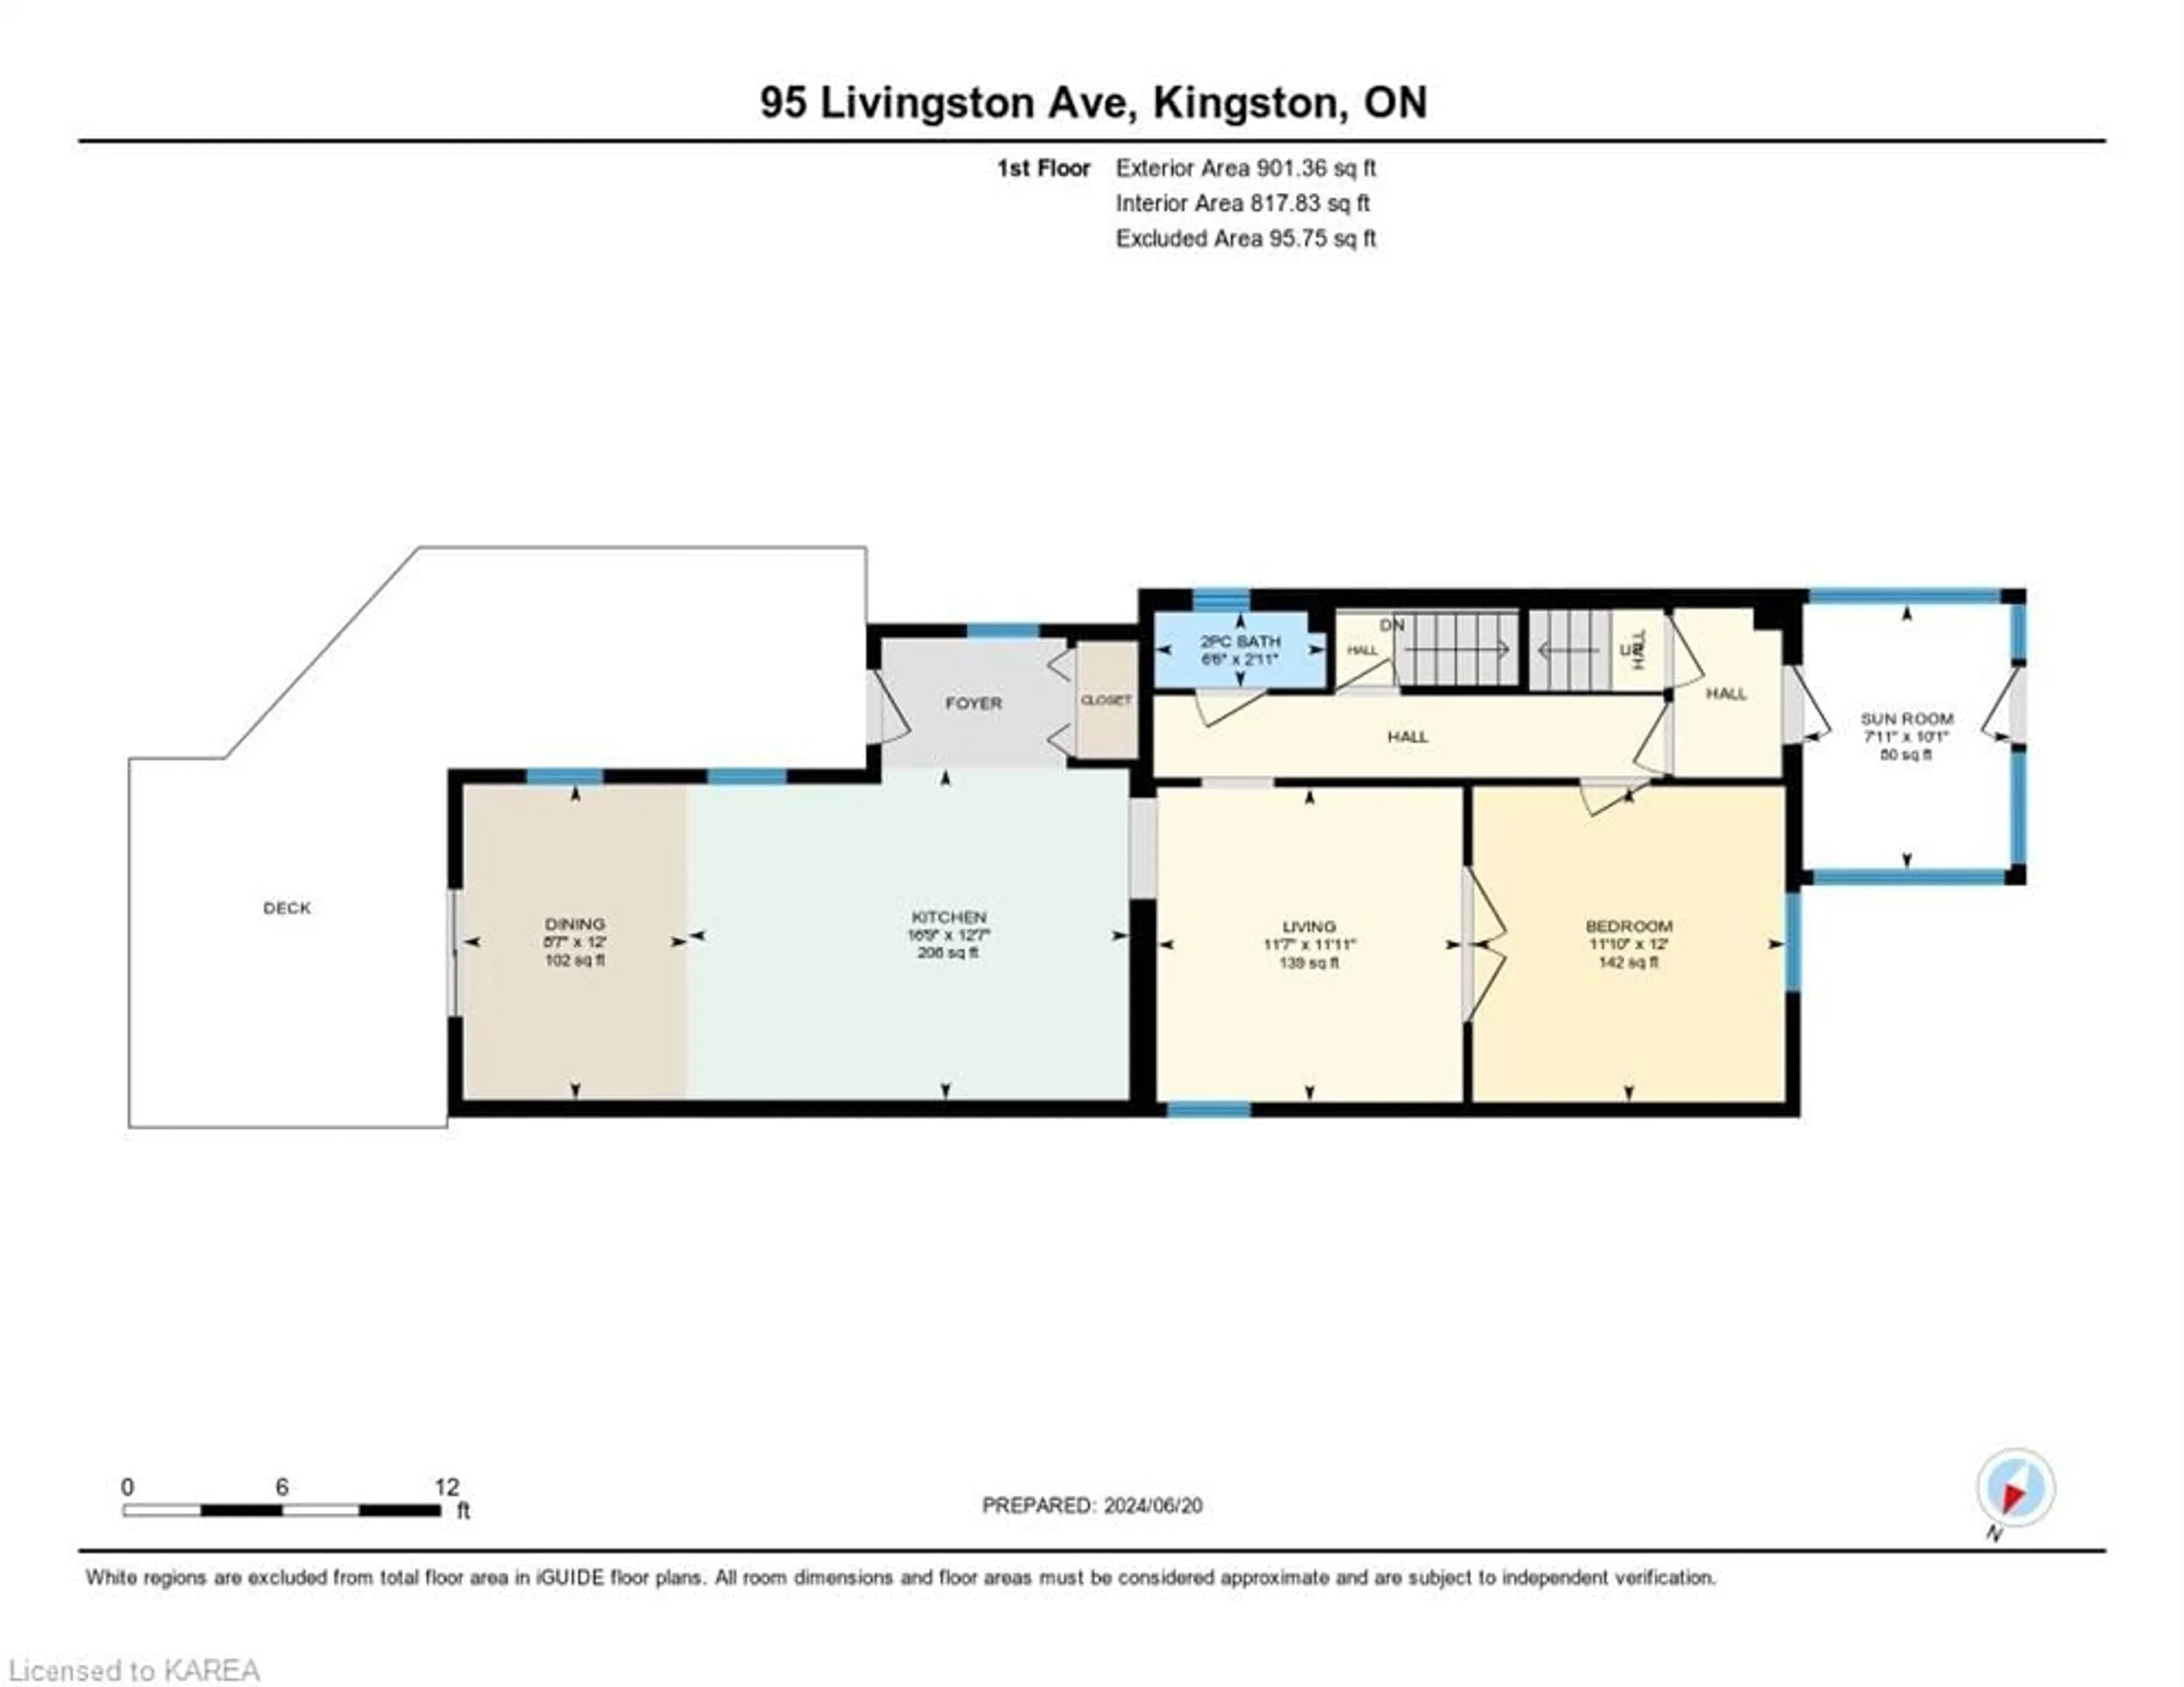 Floor plan for 95 Livingston Ave, Kingston Ontario K7L 4L3